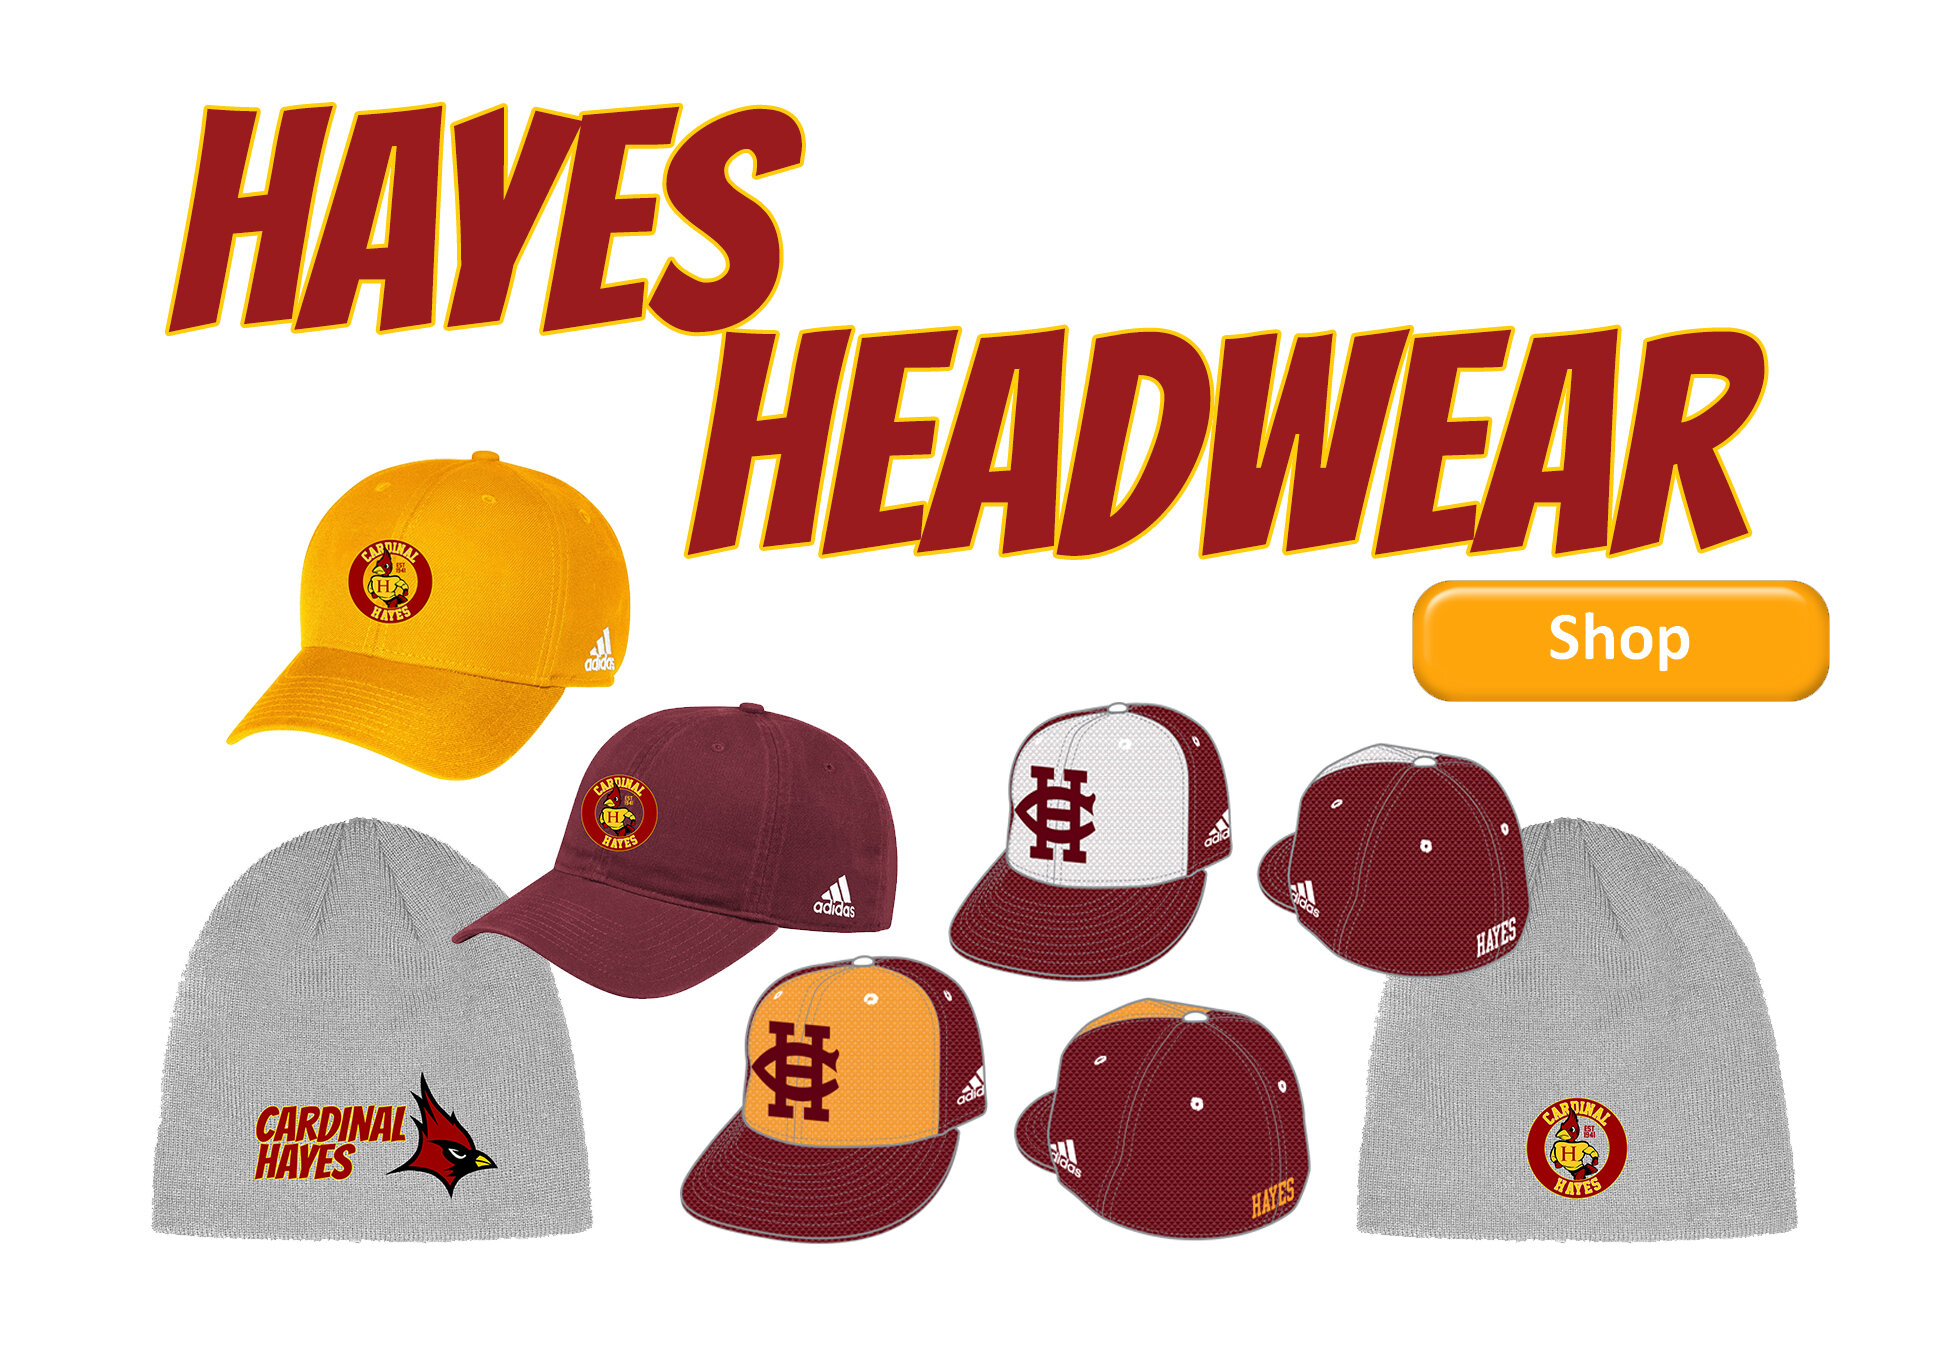 Hayes headwear slide.jpg